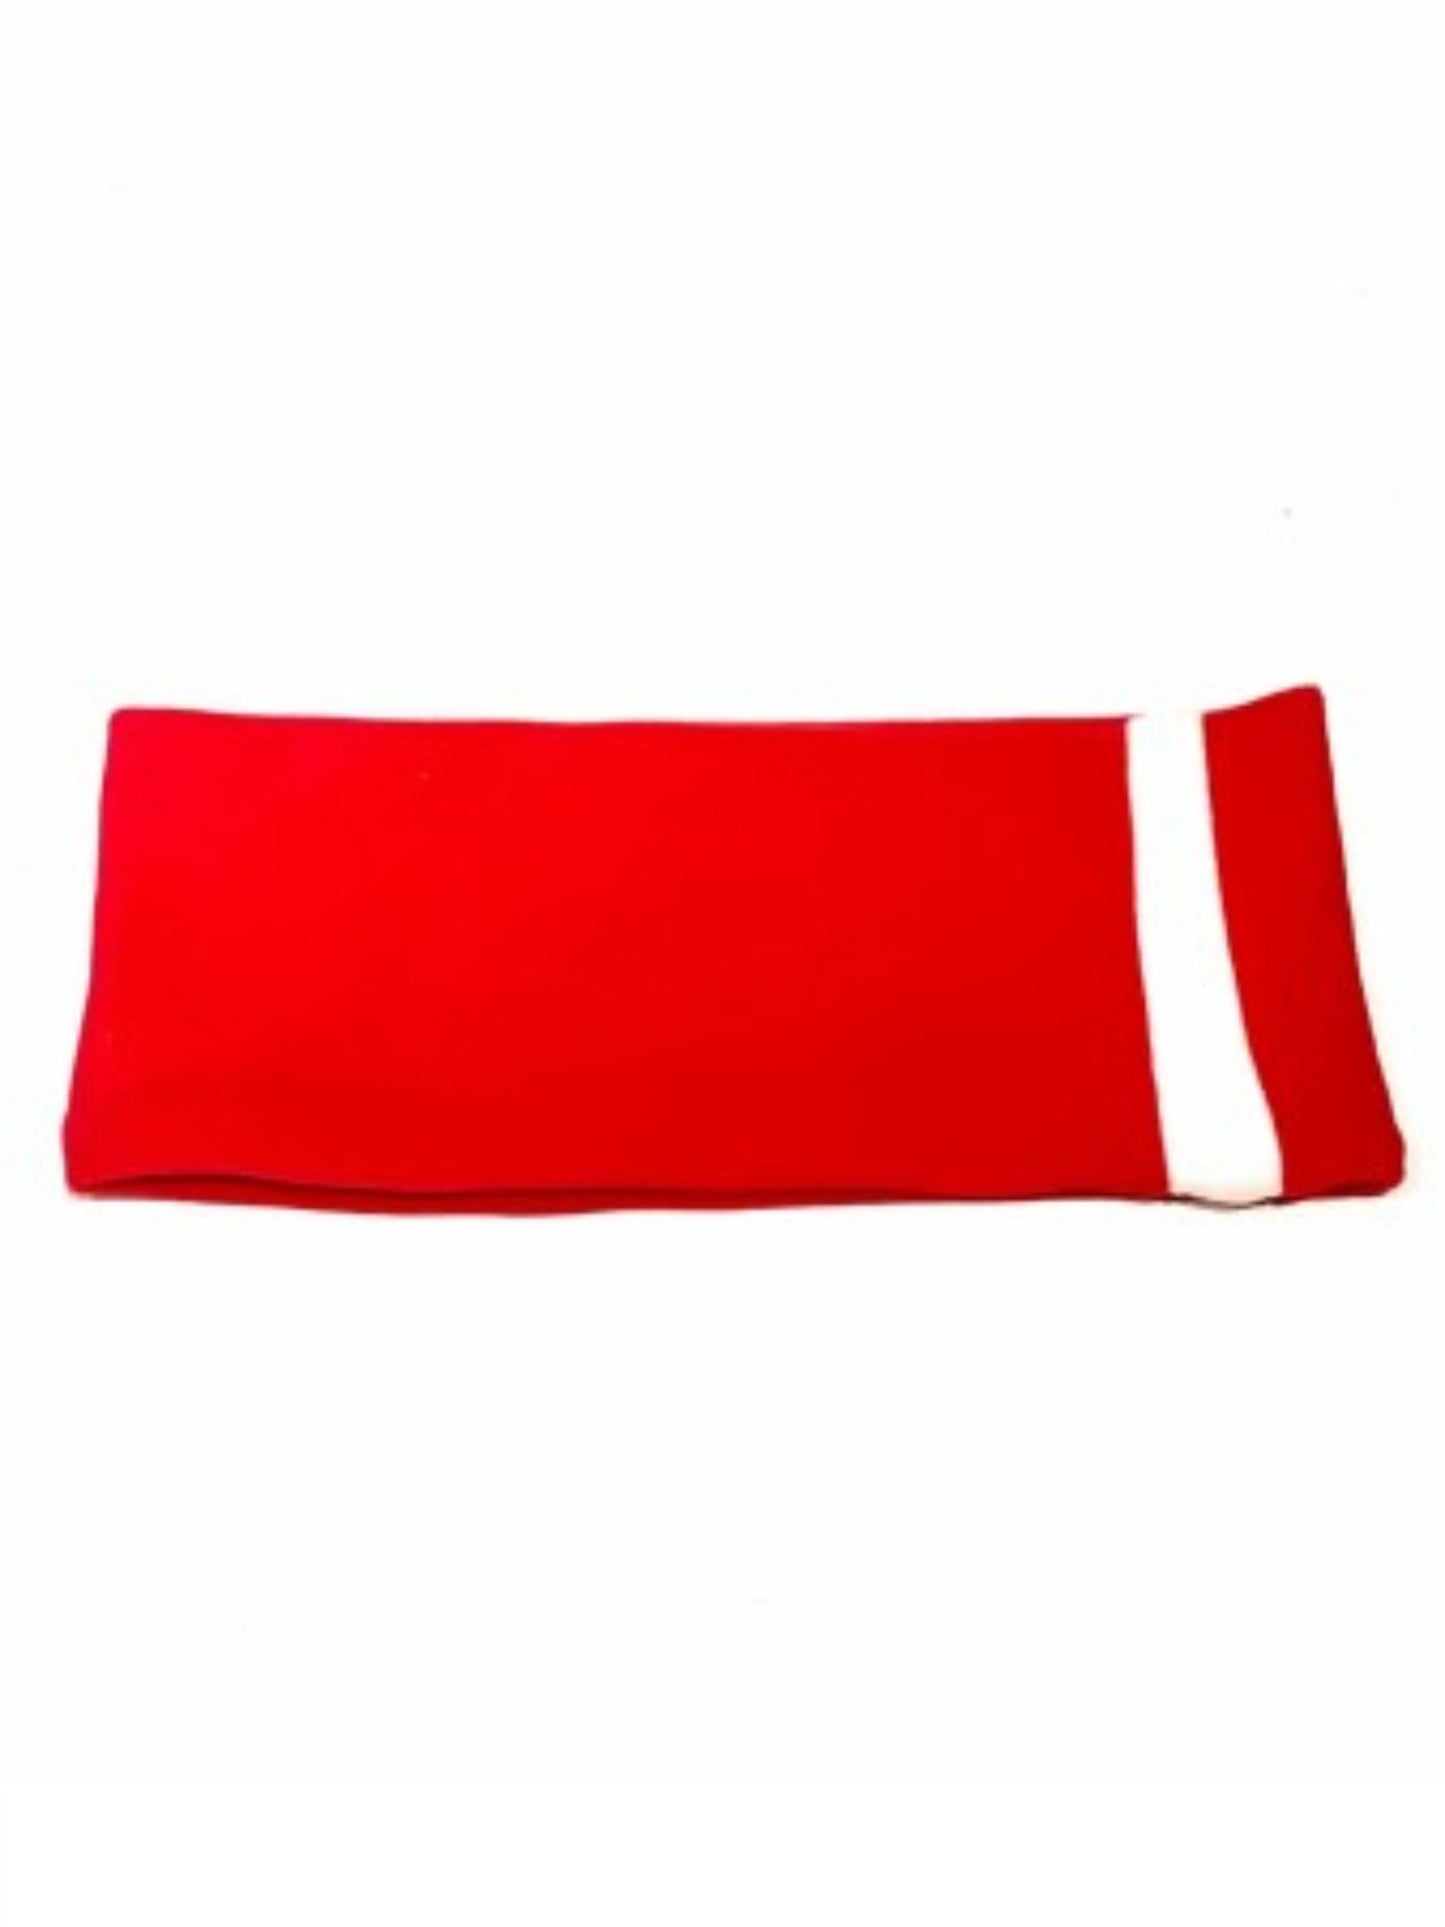 Pinakkel Headband - Red/White - at home